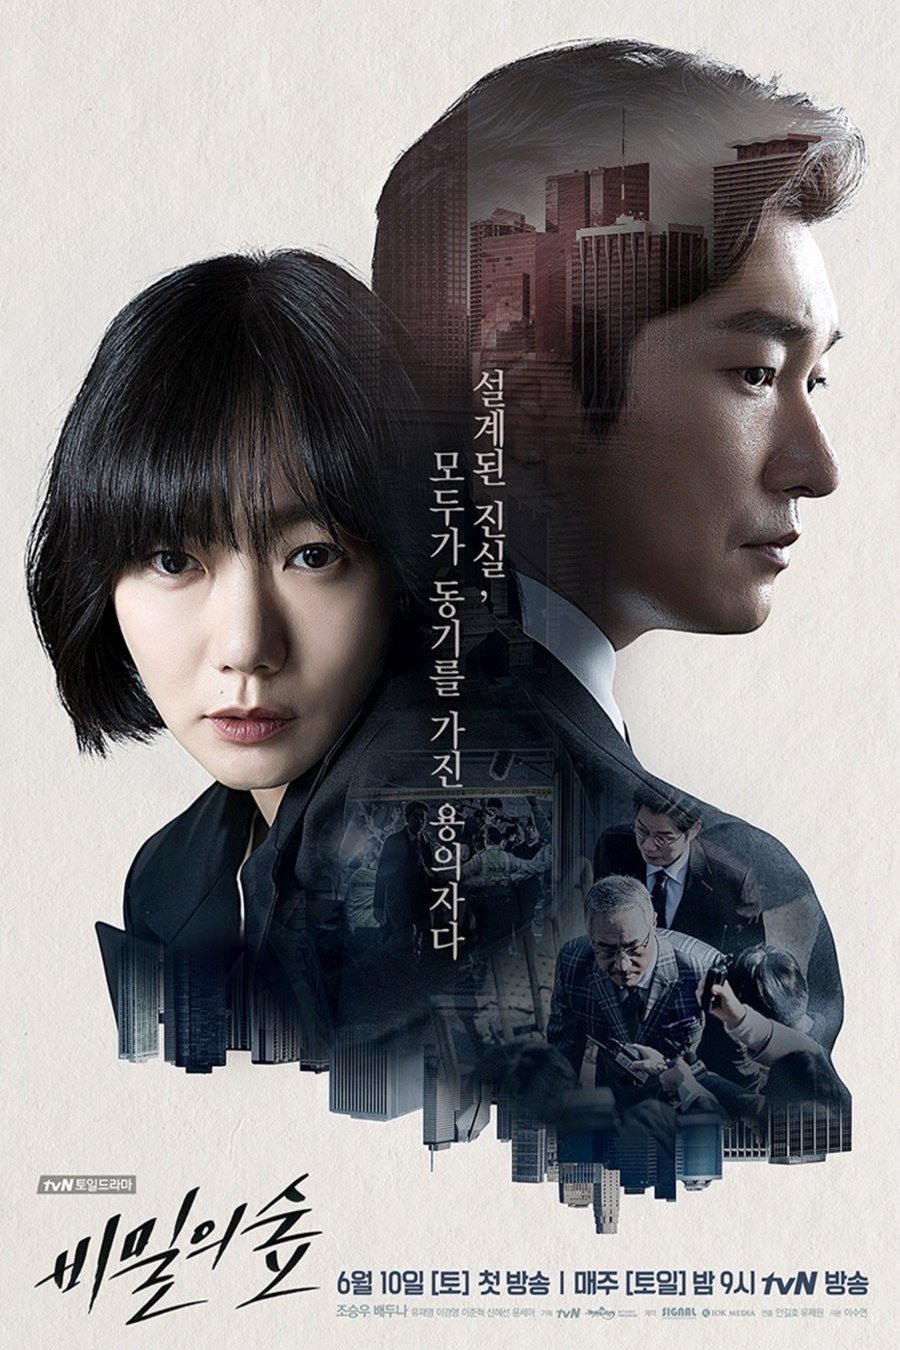 Korean poster of the movie Stranger